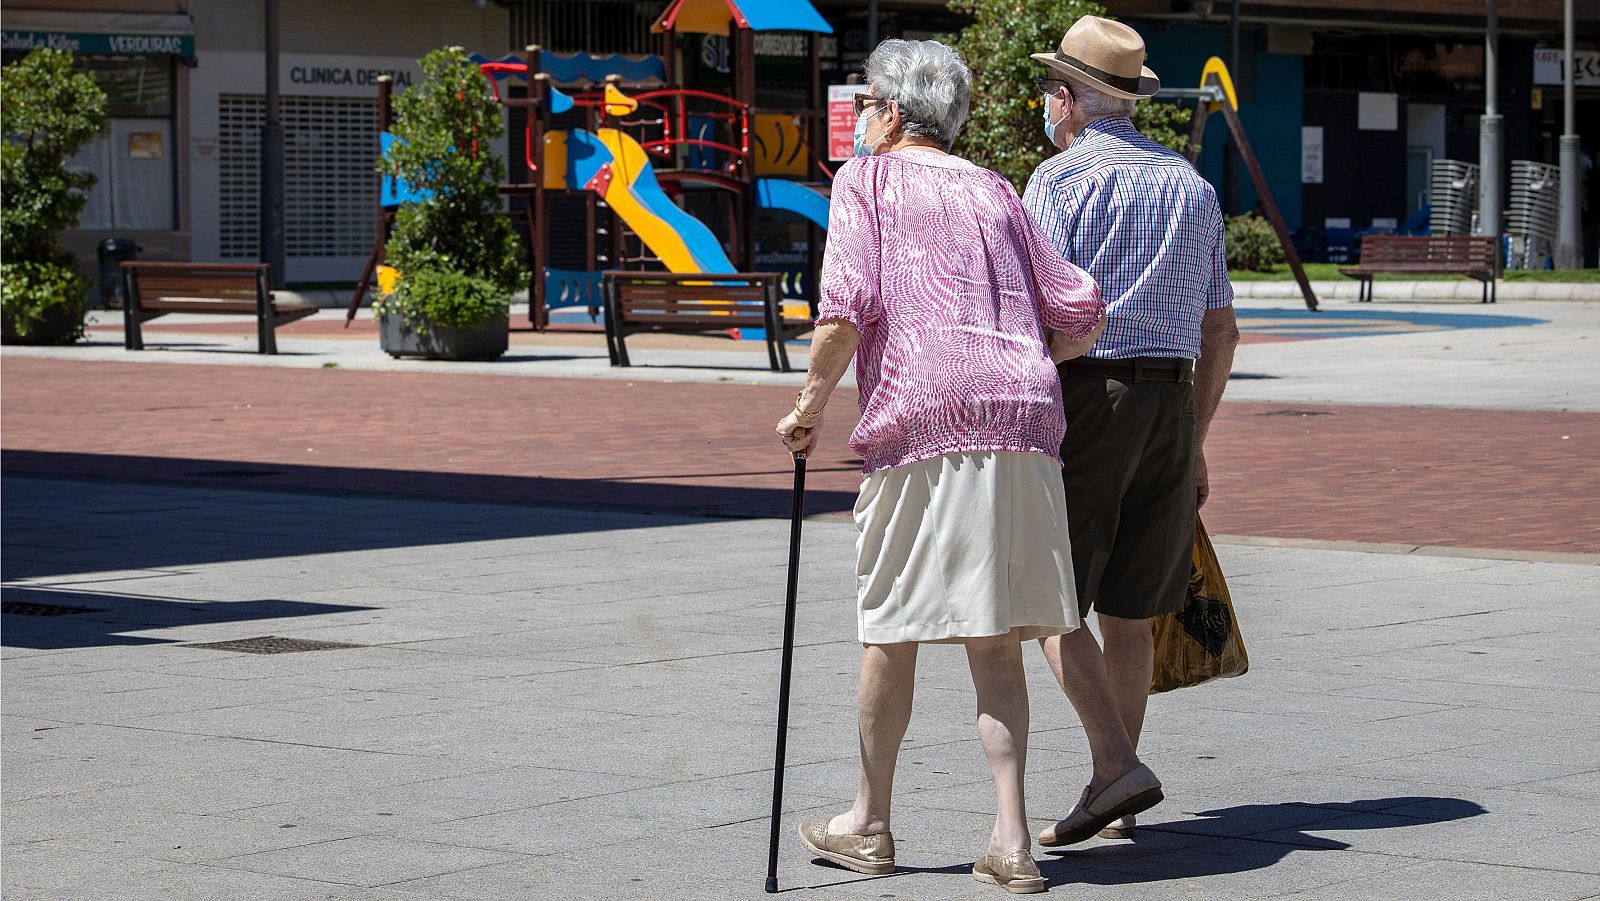 Una pareja de ancianos pasea agarrada del brazo y vestidos con ropa veraniega